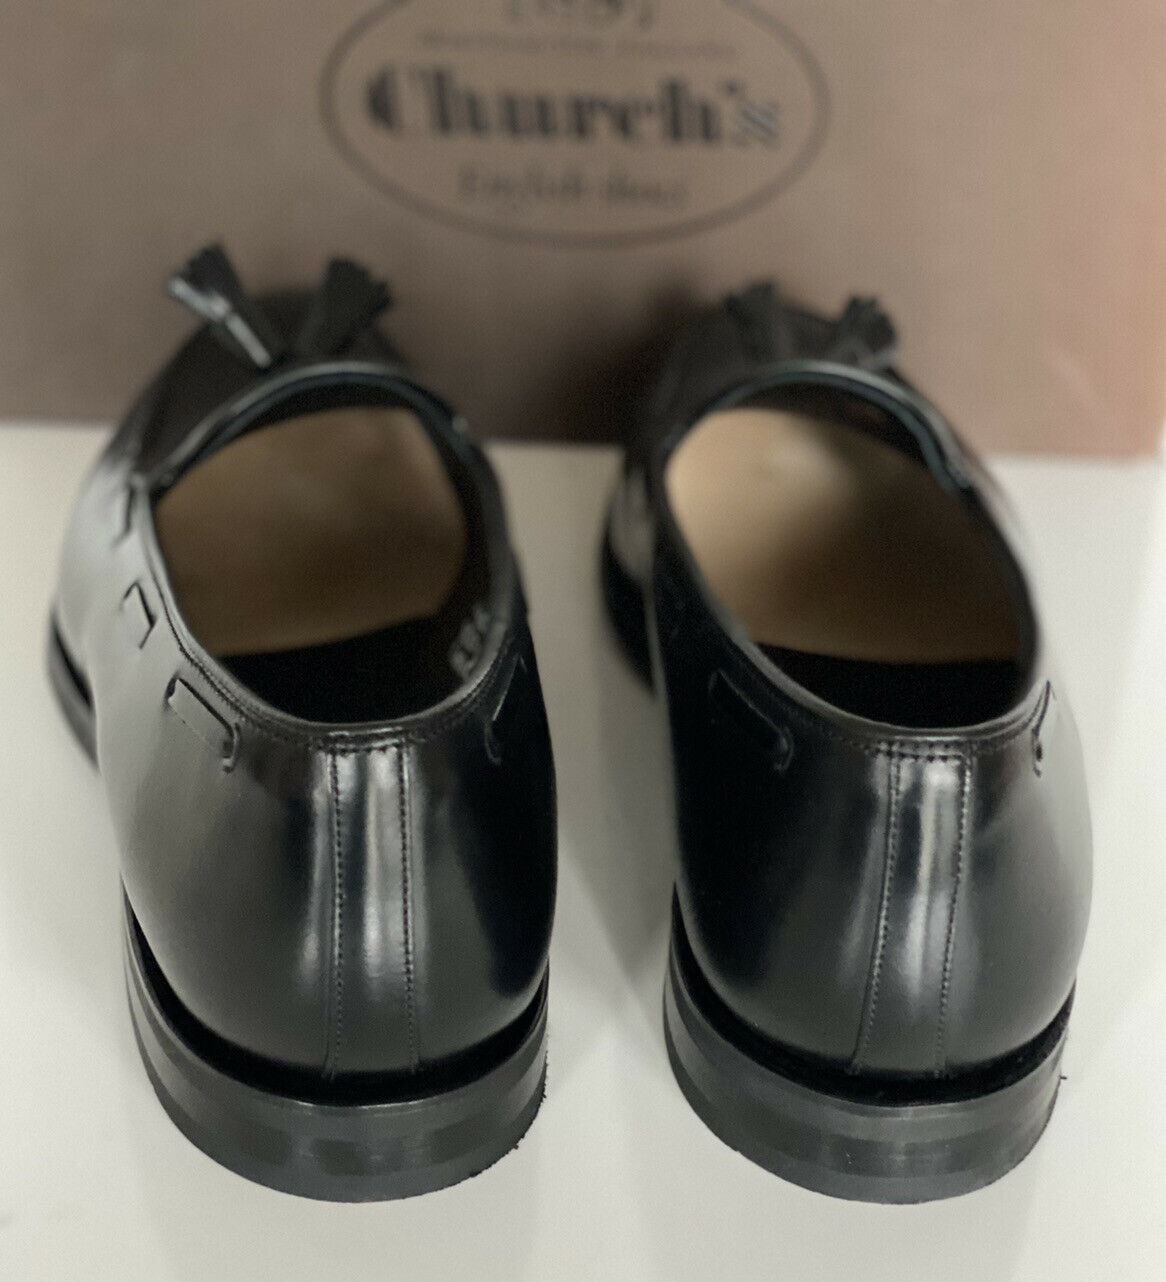 NIB Church's schwarze polnische Binder-Leder-Chicane-Schuhe für Herren, 8,5 US EDC040 UK 